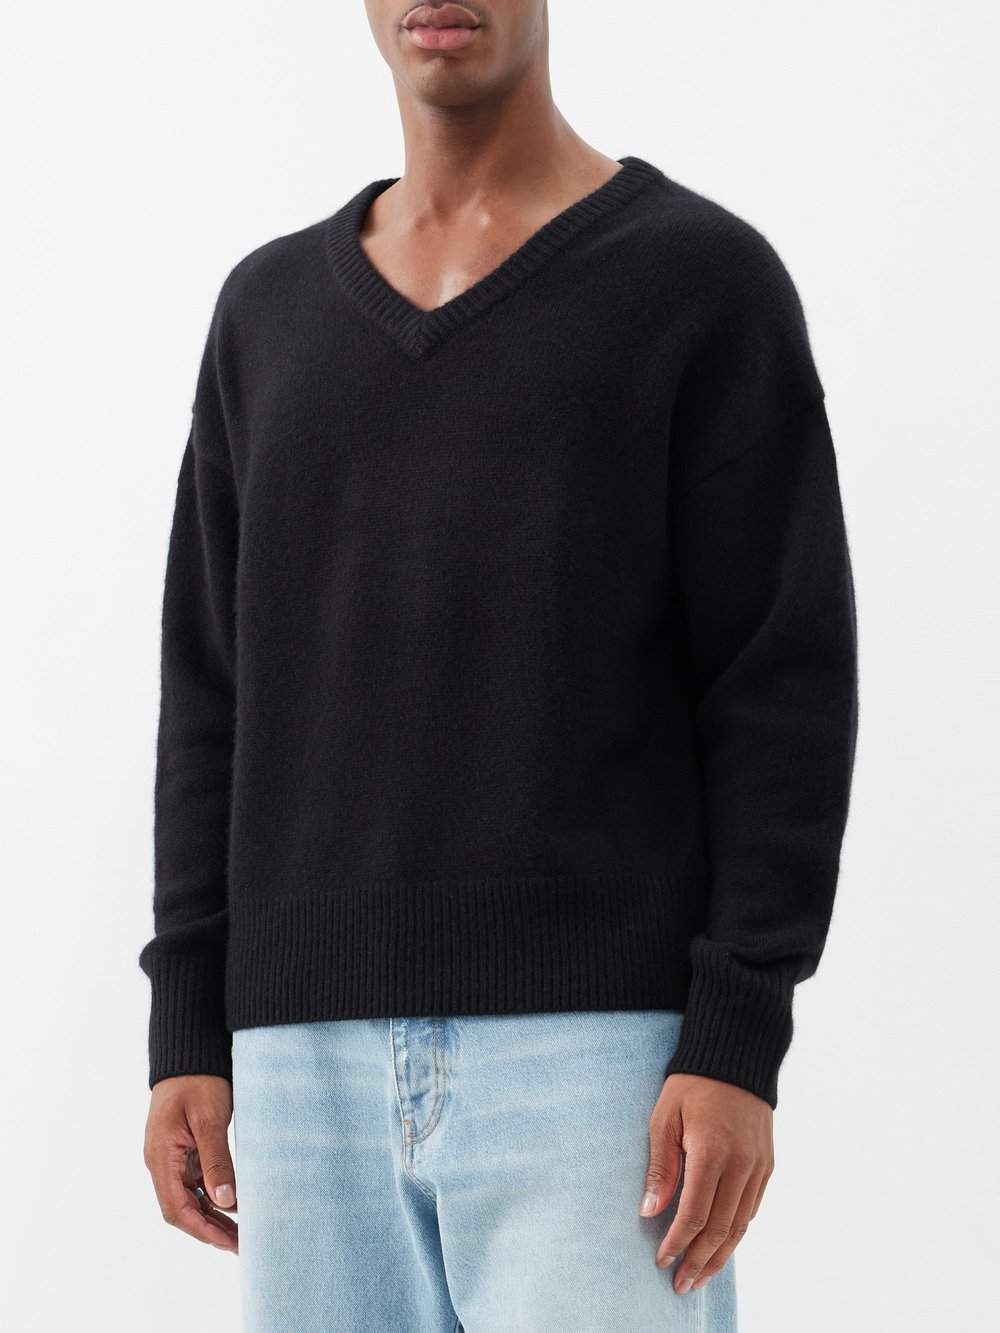 Кашемировый свитер mr battersea с v-образным вырезом Arch4, черный цена и фото